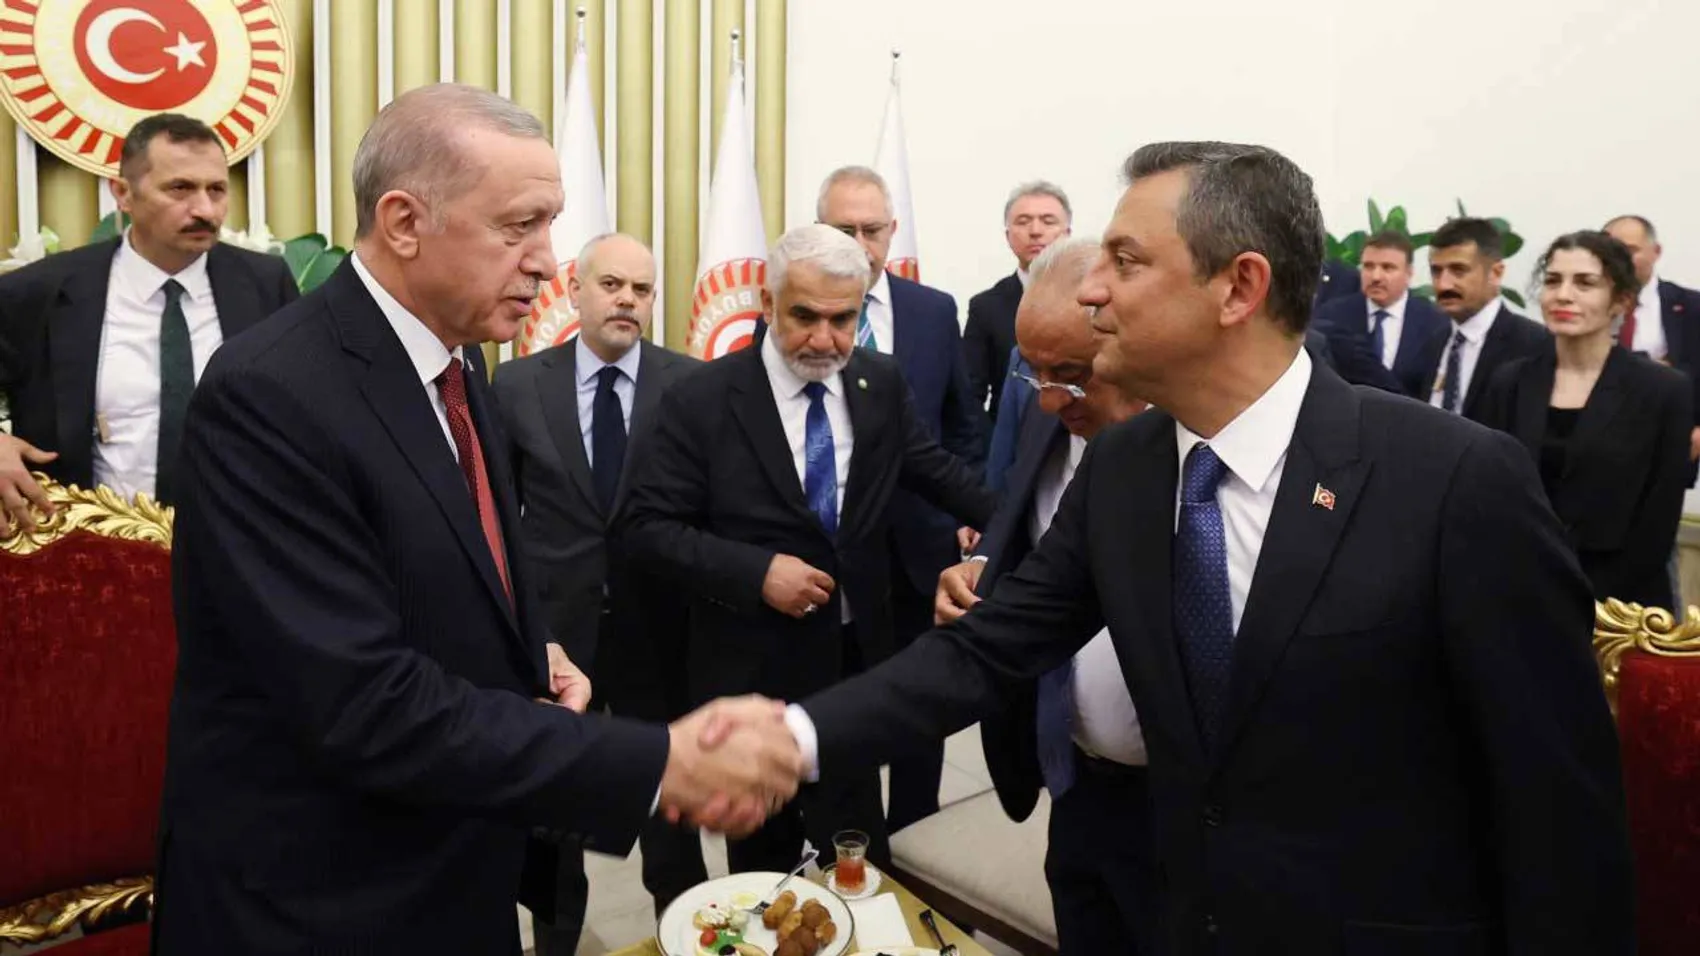 AKP'den, Özel-Erdoğan Görüşmesi İçin Açıklama